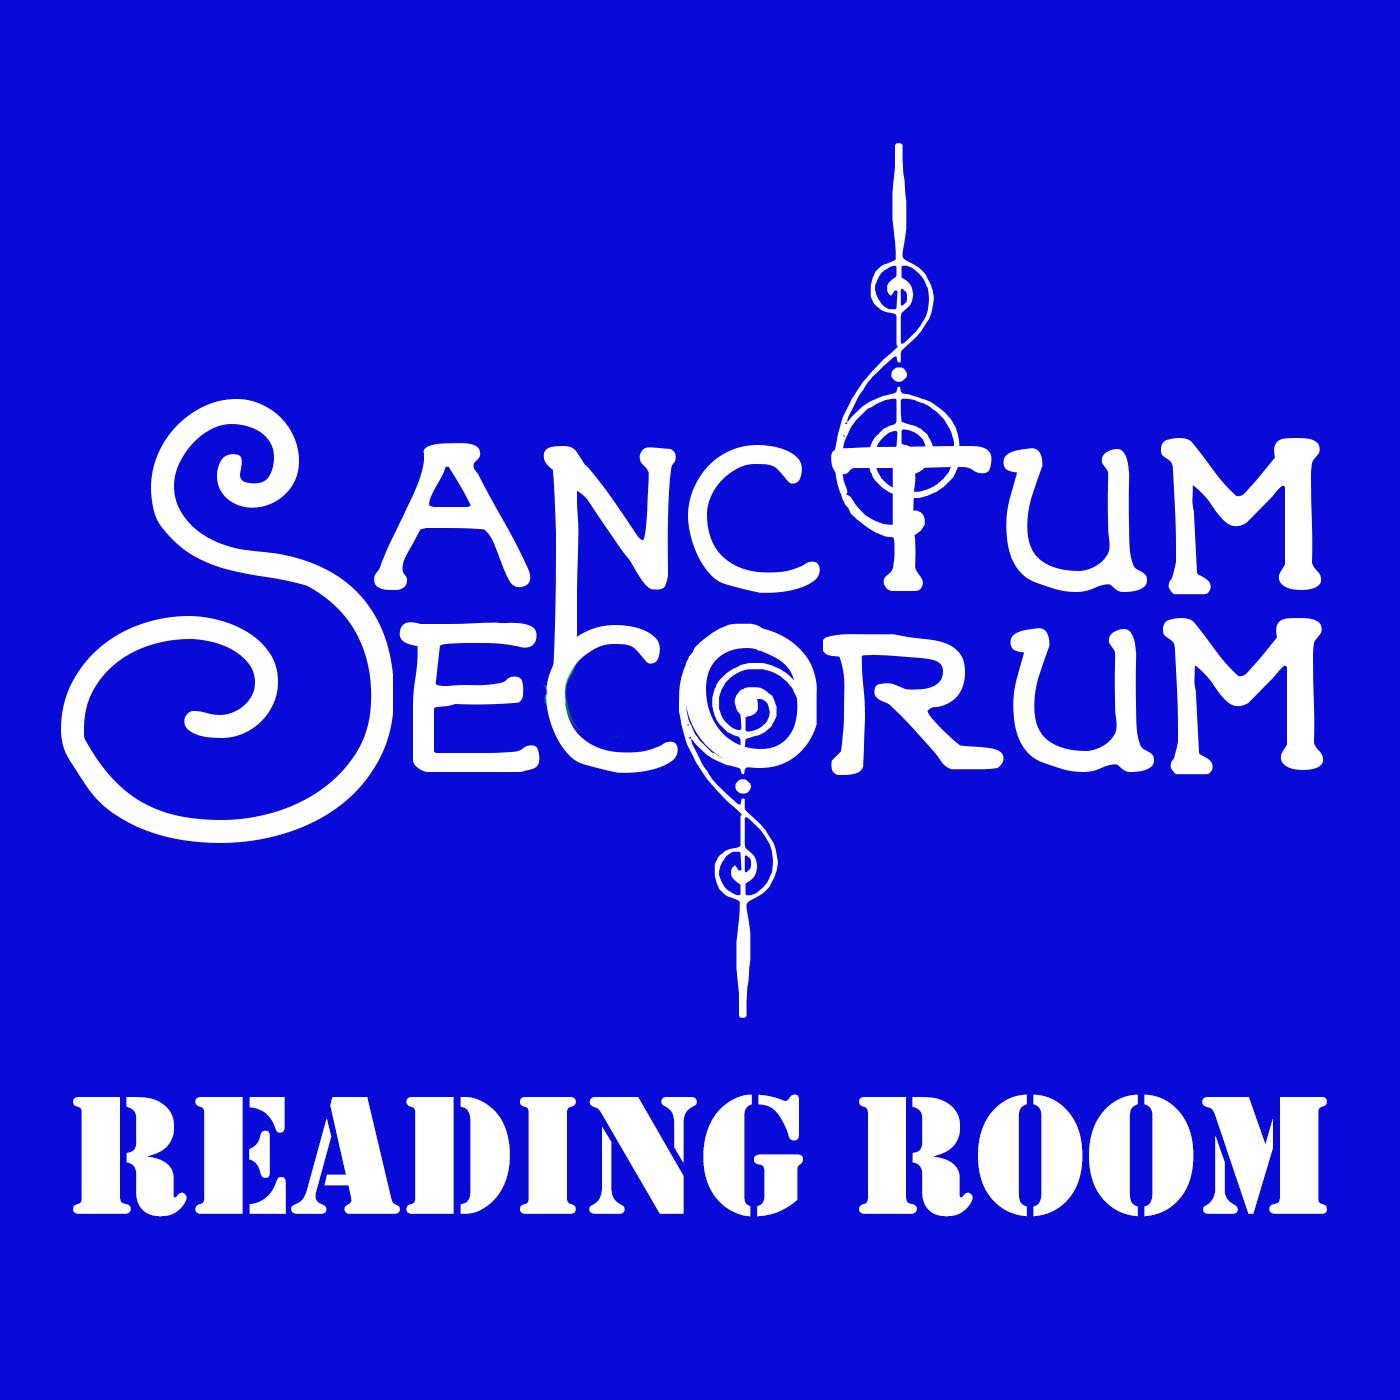 Sanctum Secorum Reading Room #07 - Pilgrimage